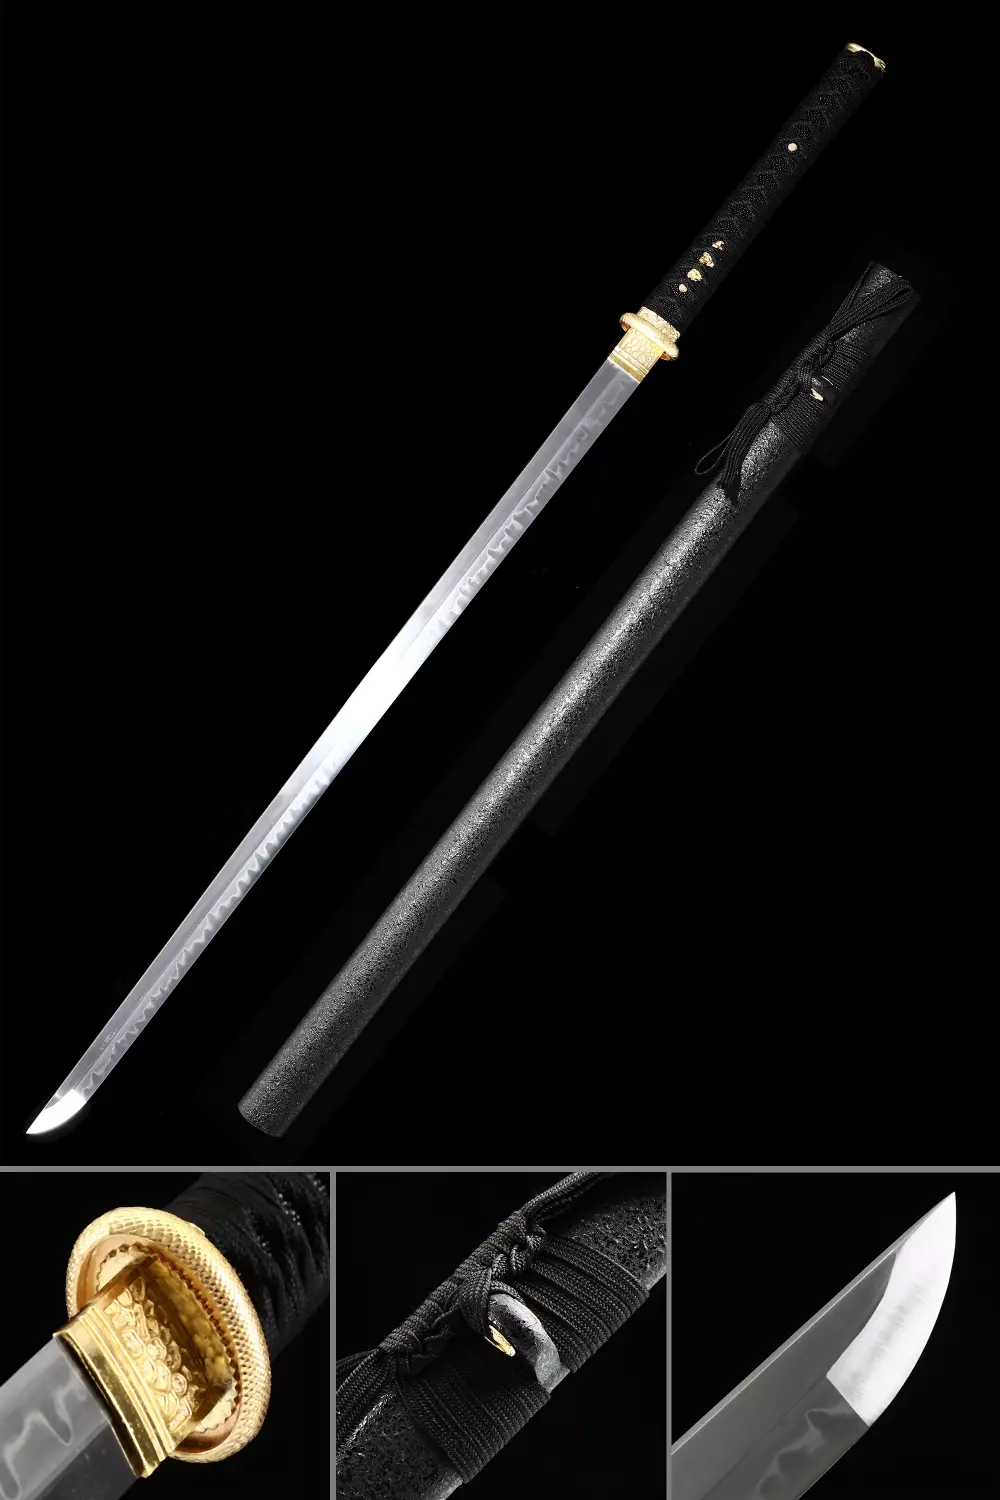 Ninjato Sword Wooden Bokken 103 cm (40.5) with tsuba and saya